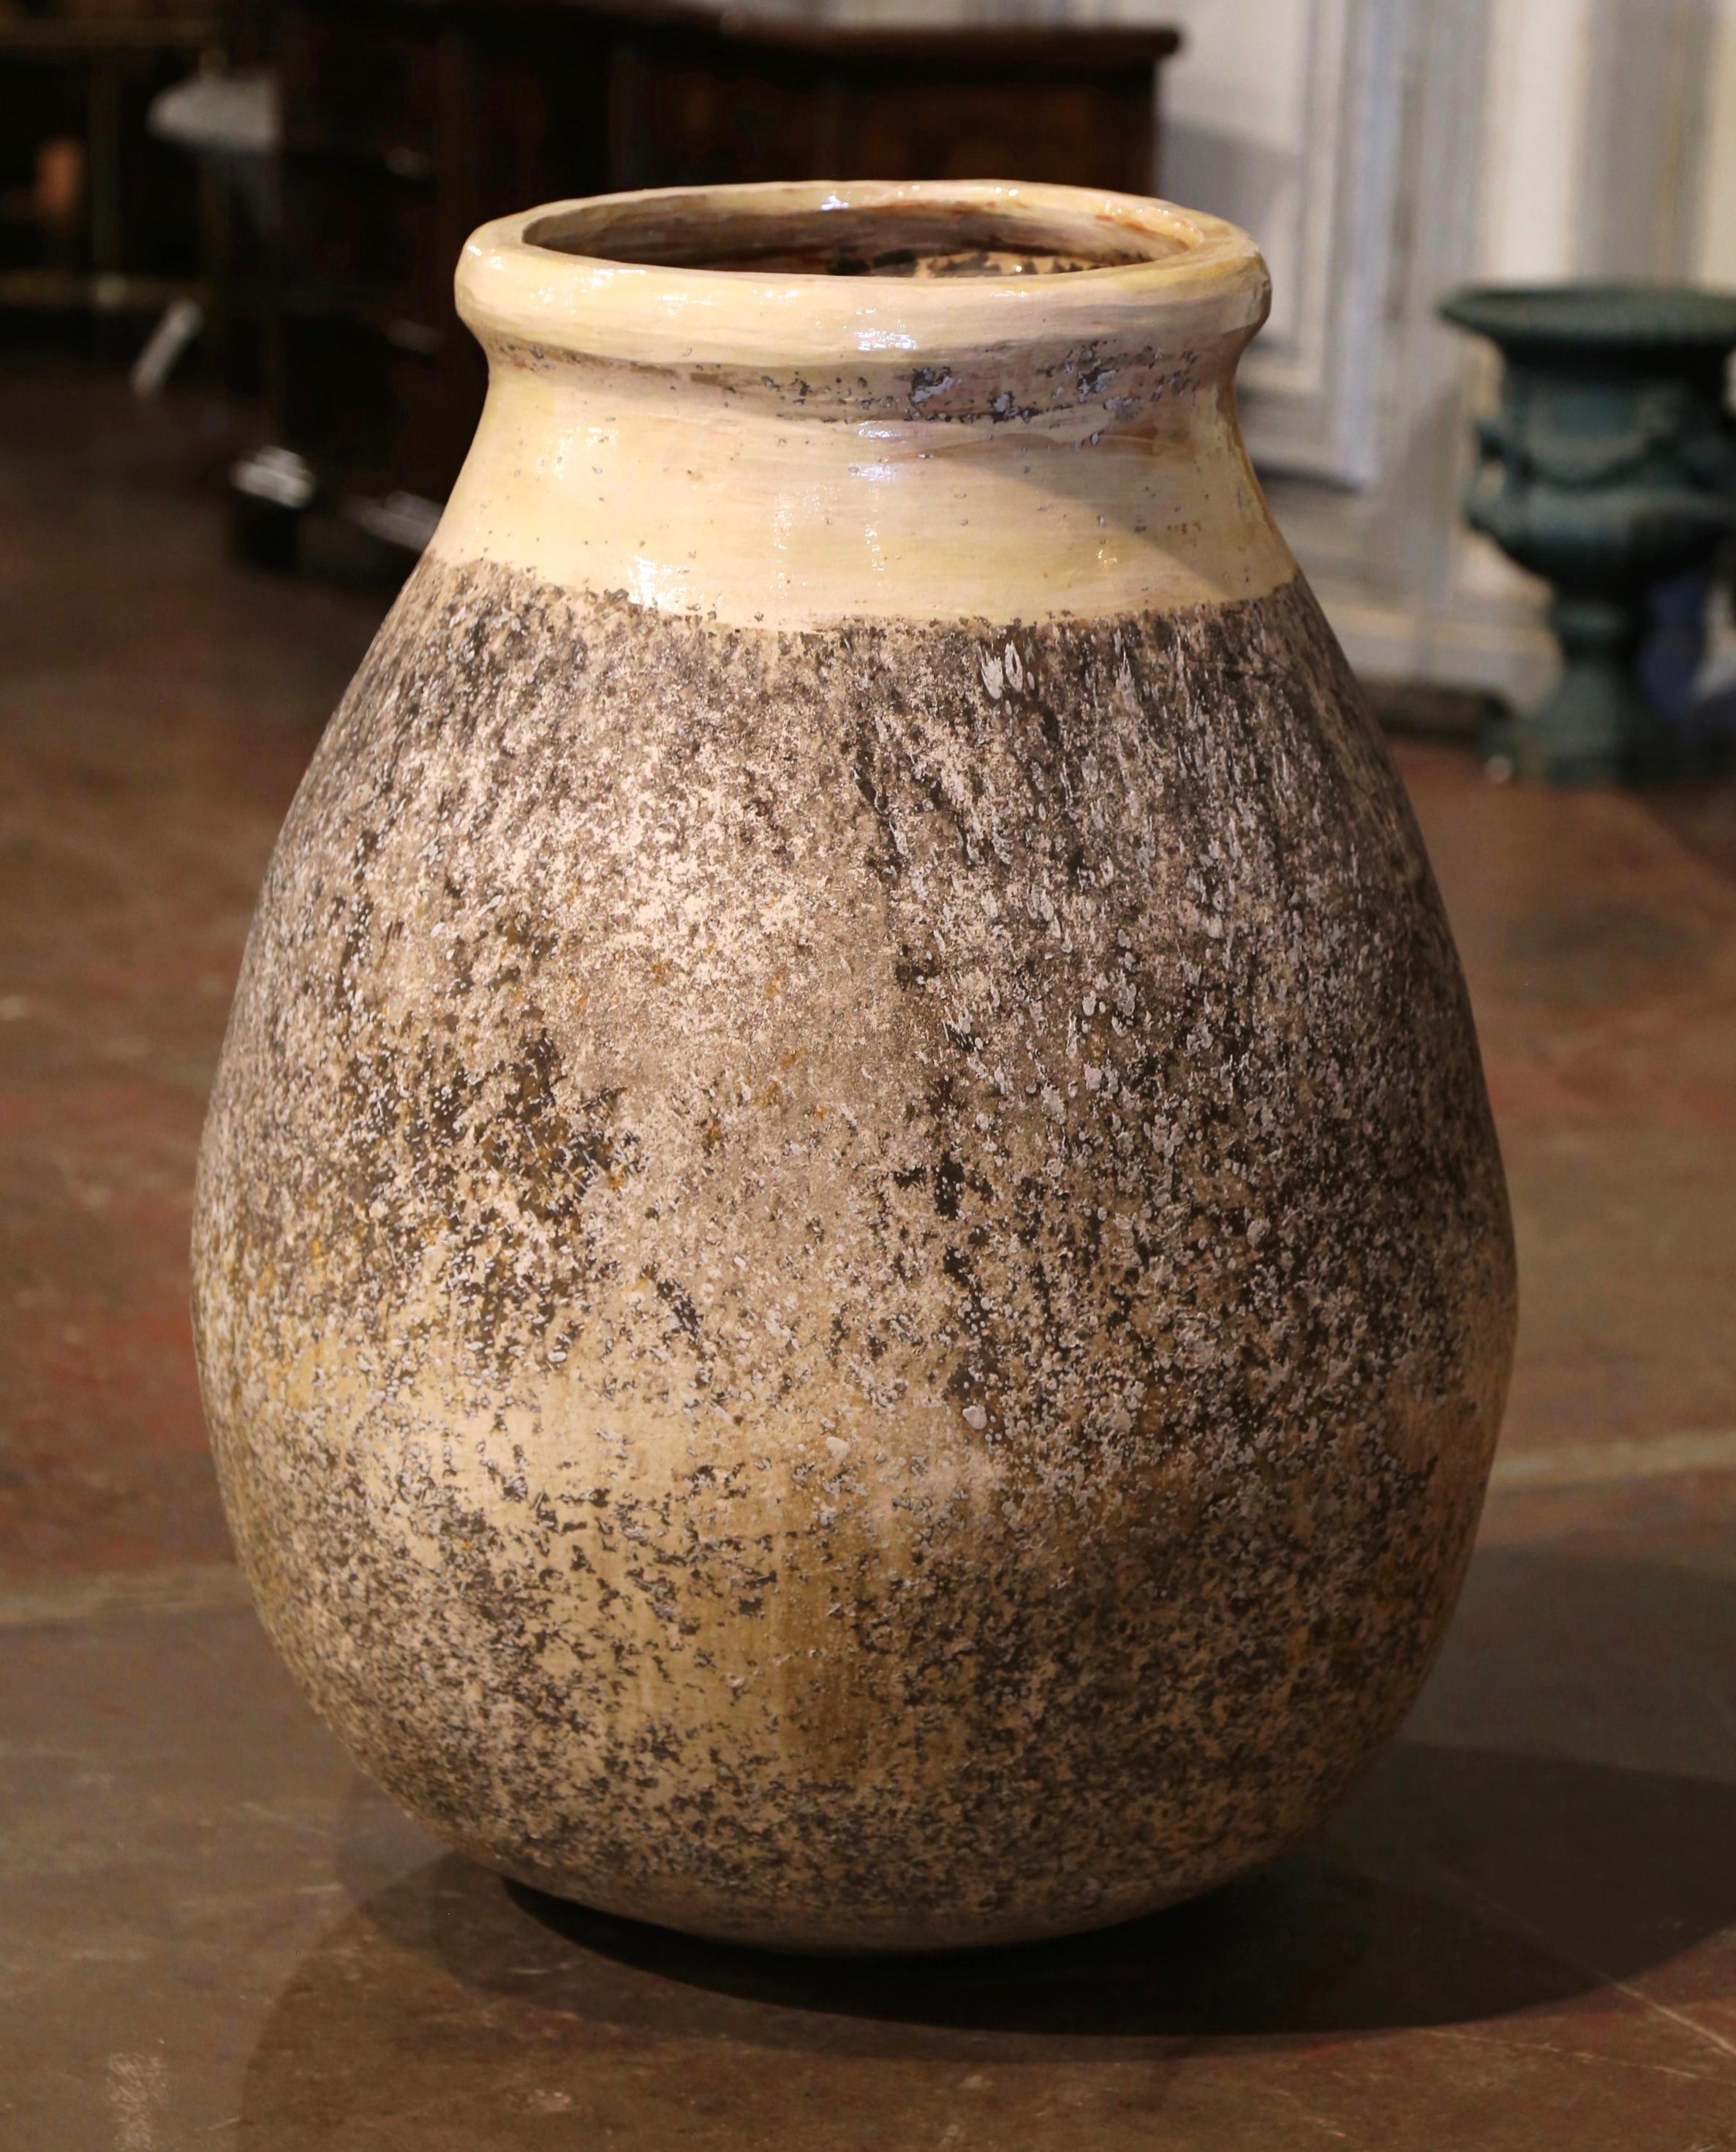 Cette grande jarre à olives en faïence ancienne a été créée à Biot, dans le sud de la France, vers 1970. Fabriqué en argile blonde et de couleur neutre, le vase en terre cuite a une forme ronde bulbeuse traditionnelle. Ce pot rustique et usé par le